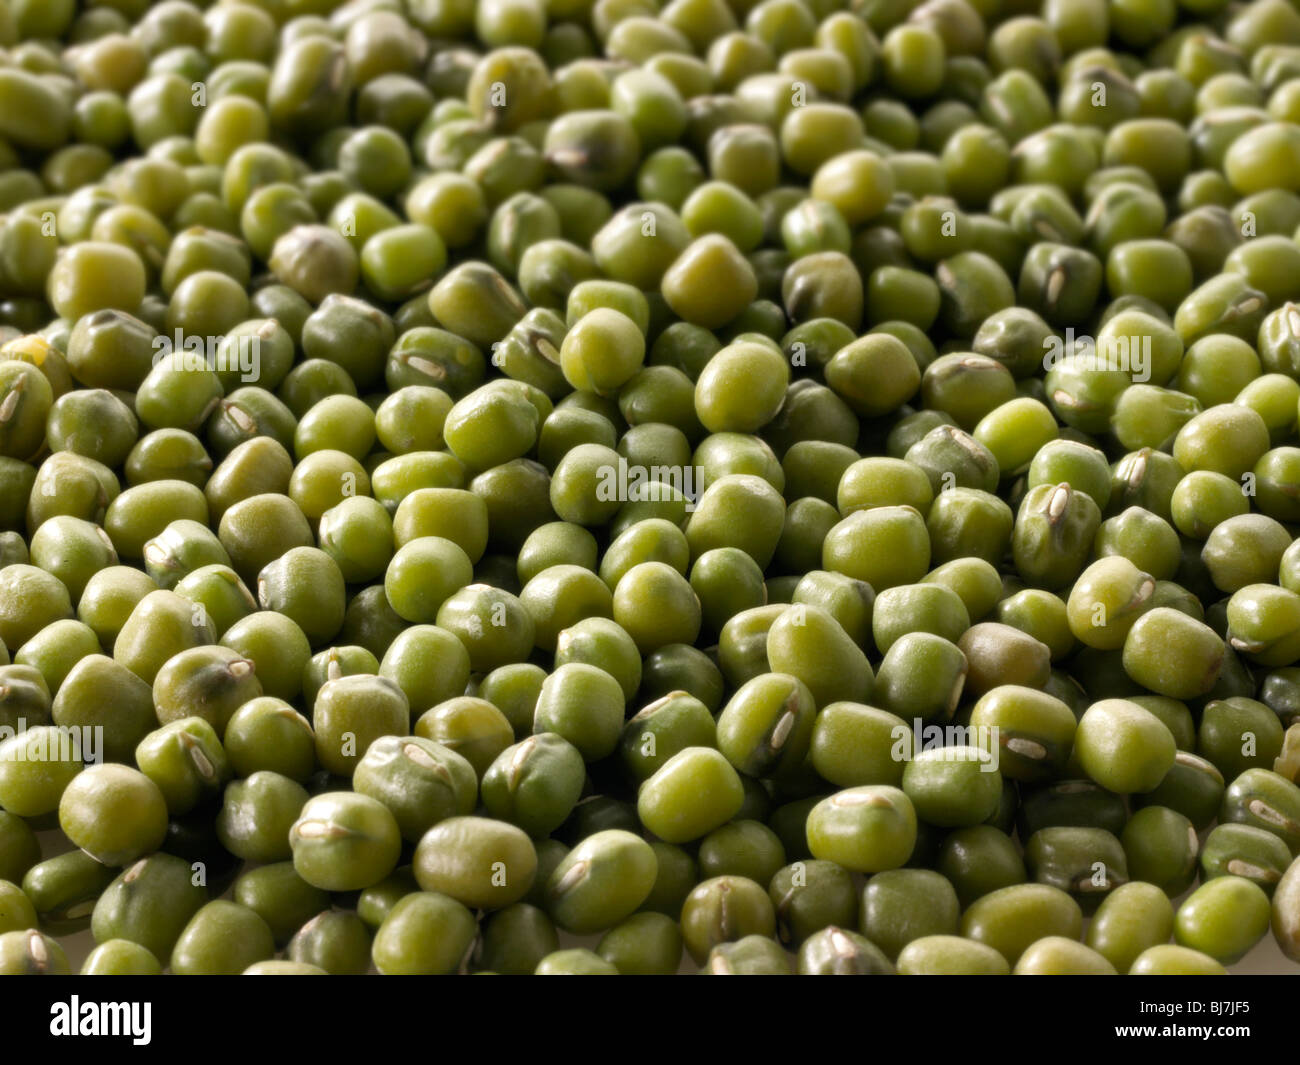 Whole mung beans, or green gram, maash, moong - close up full frame top shot  (Vigna radiata) Stock Photo